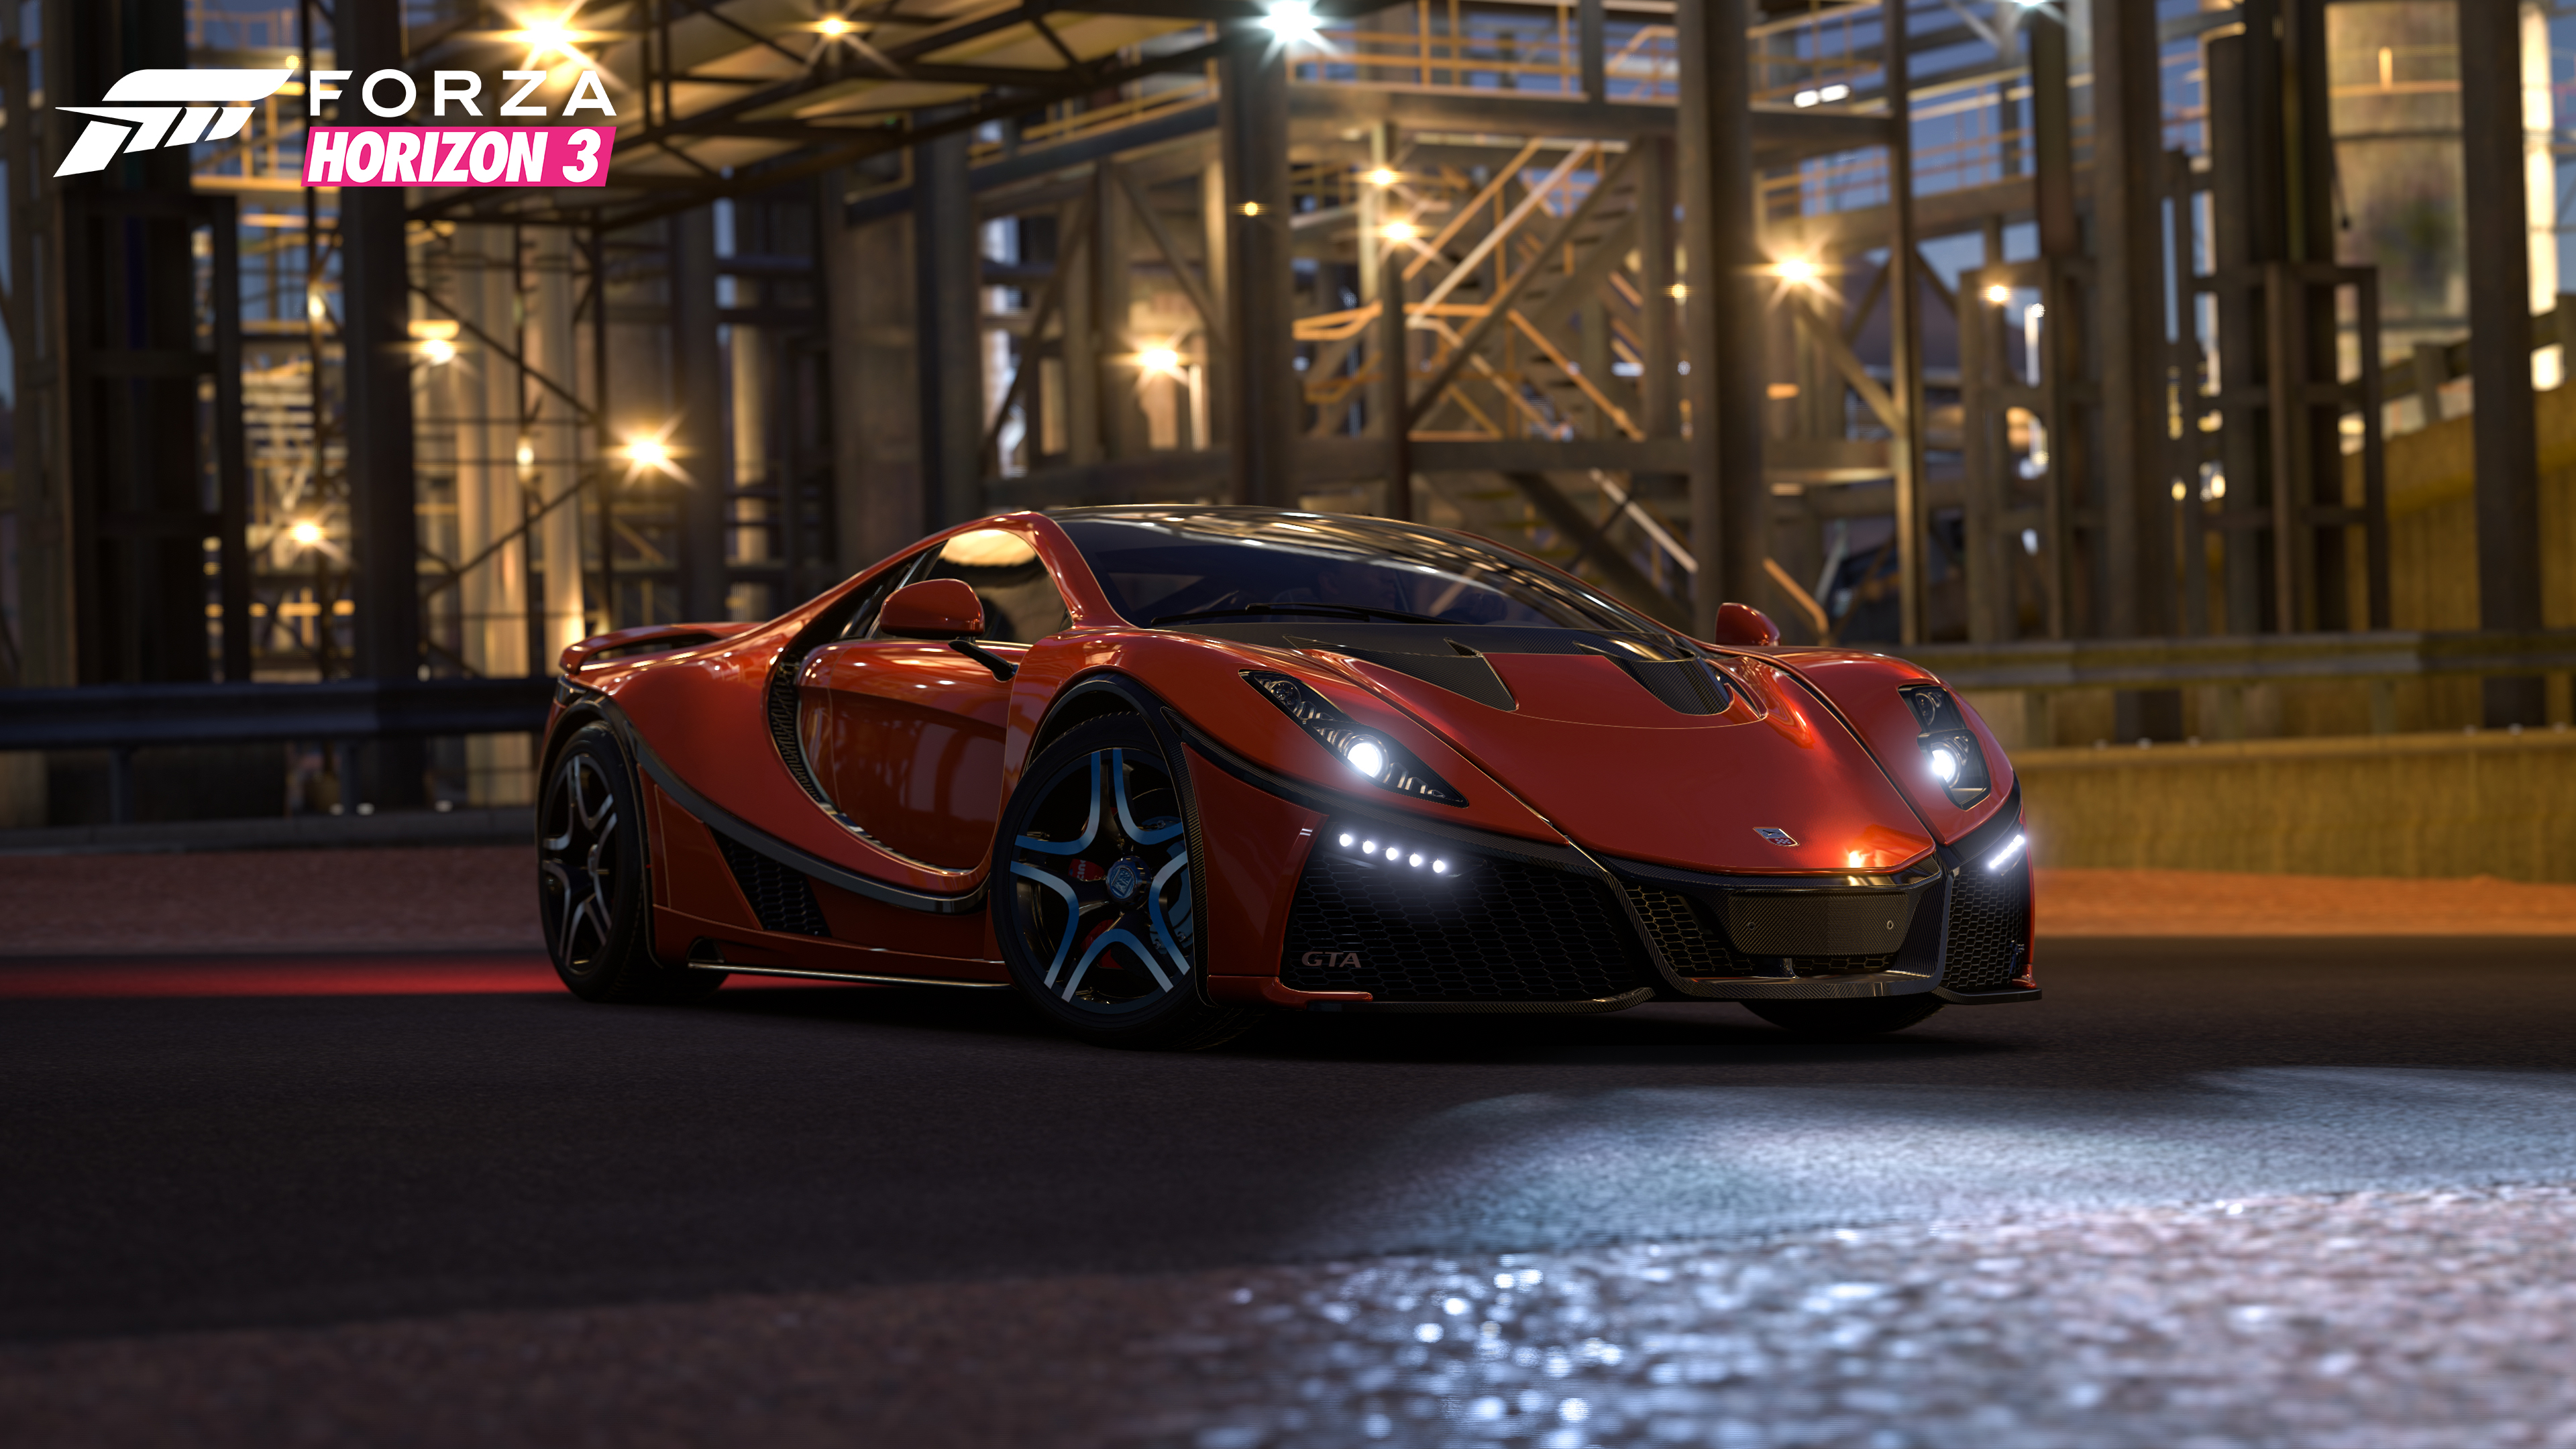 2016 GTA Spano in Forza Horizon 3